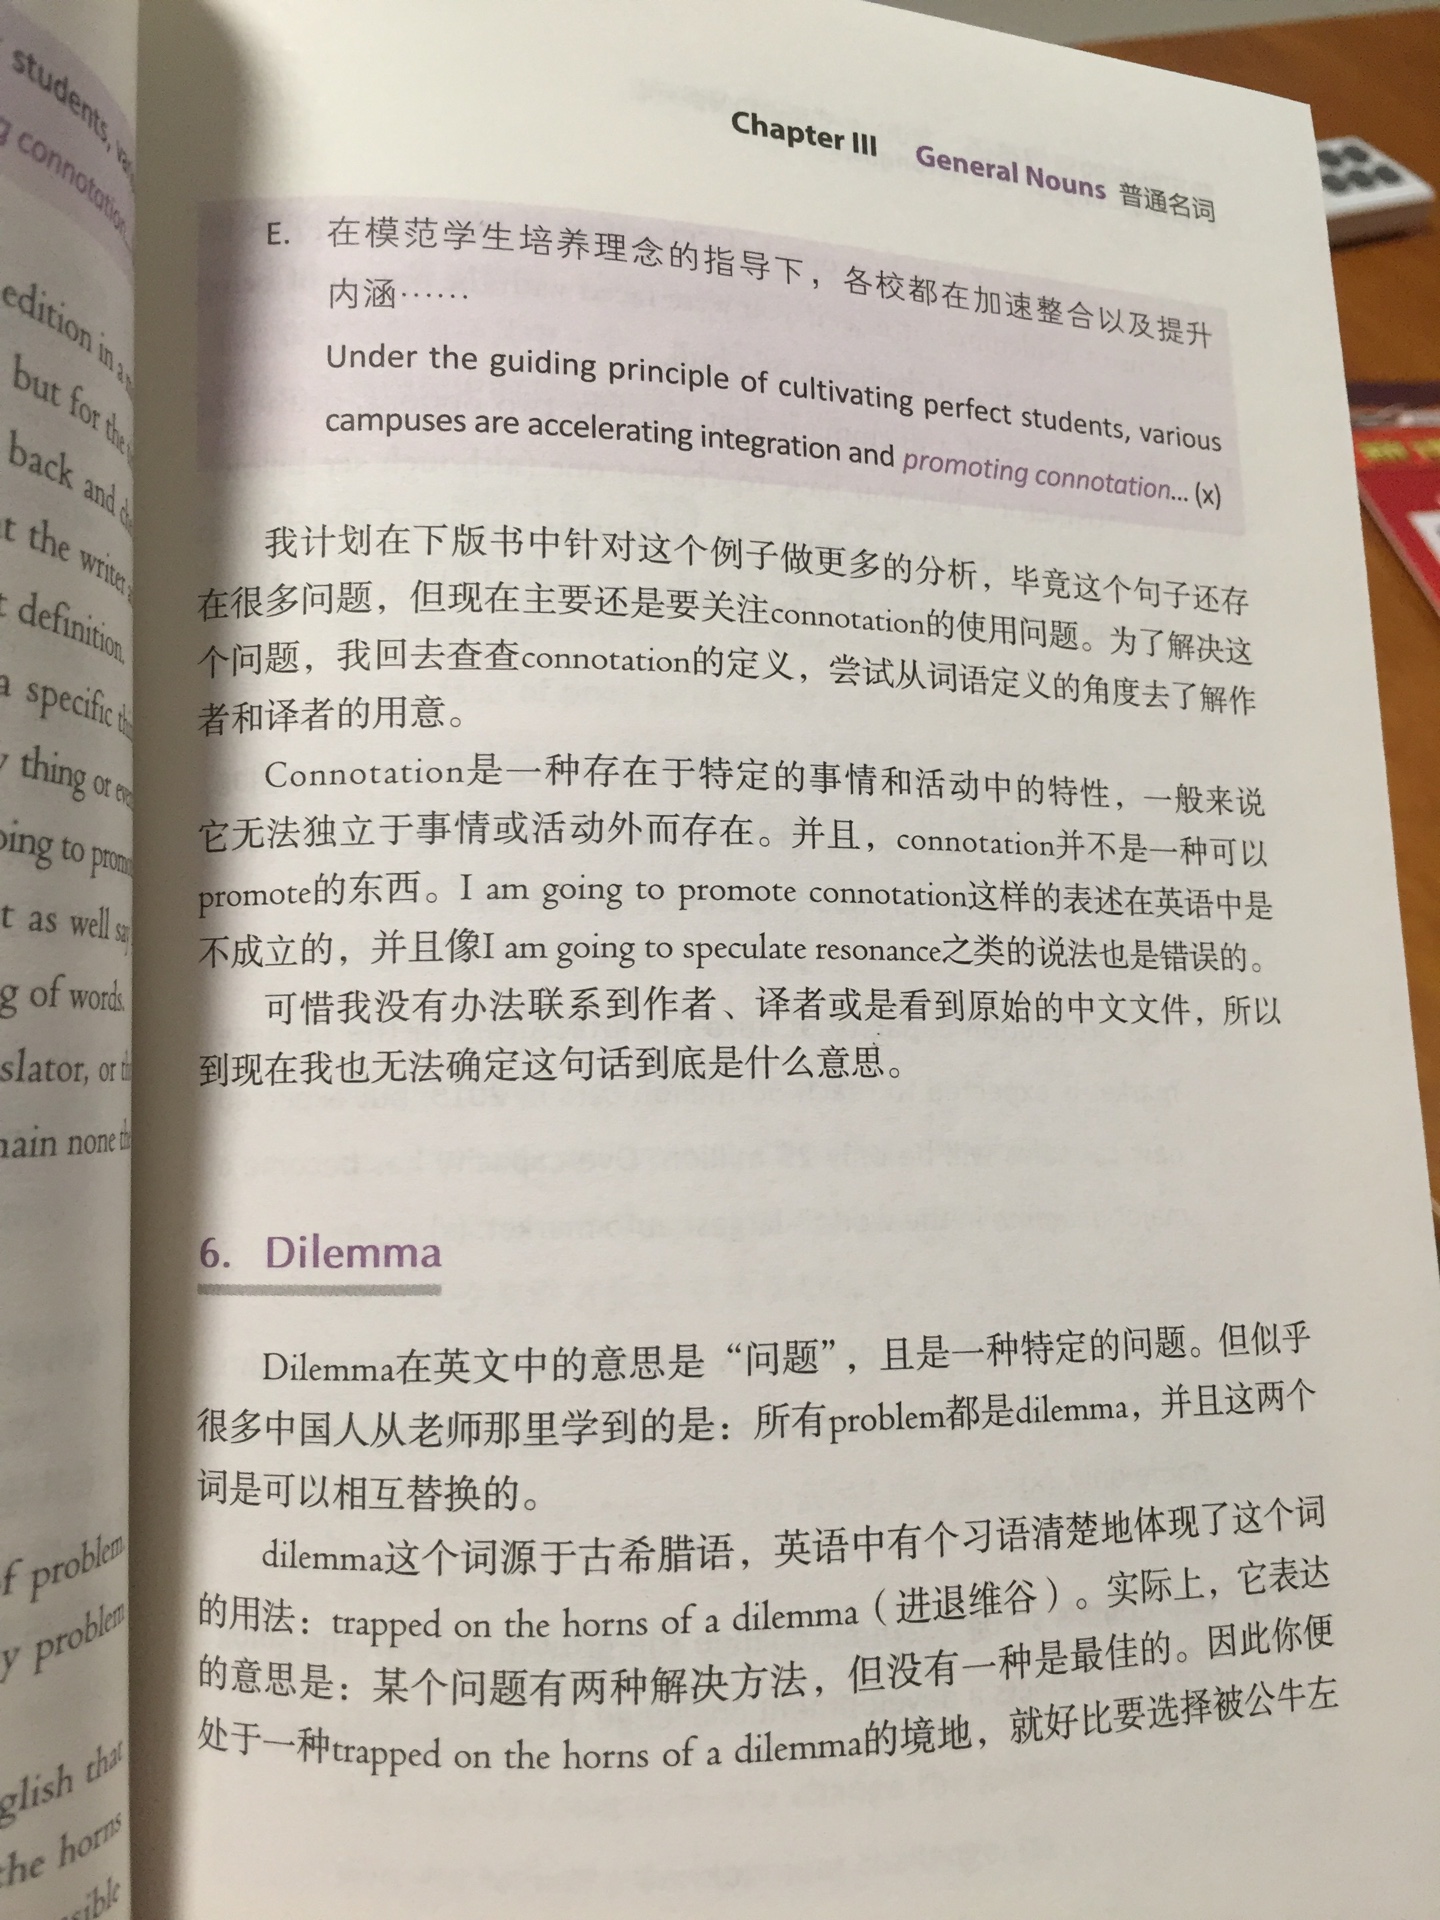 英语为母语的人，告诉你如何把中文的思考用英文表达出来，值得读